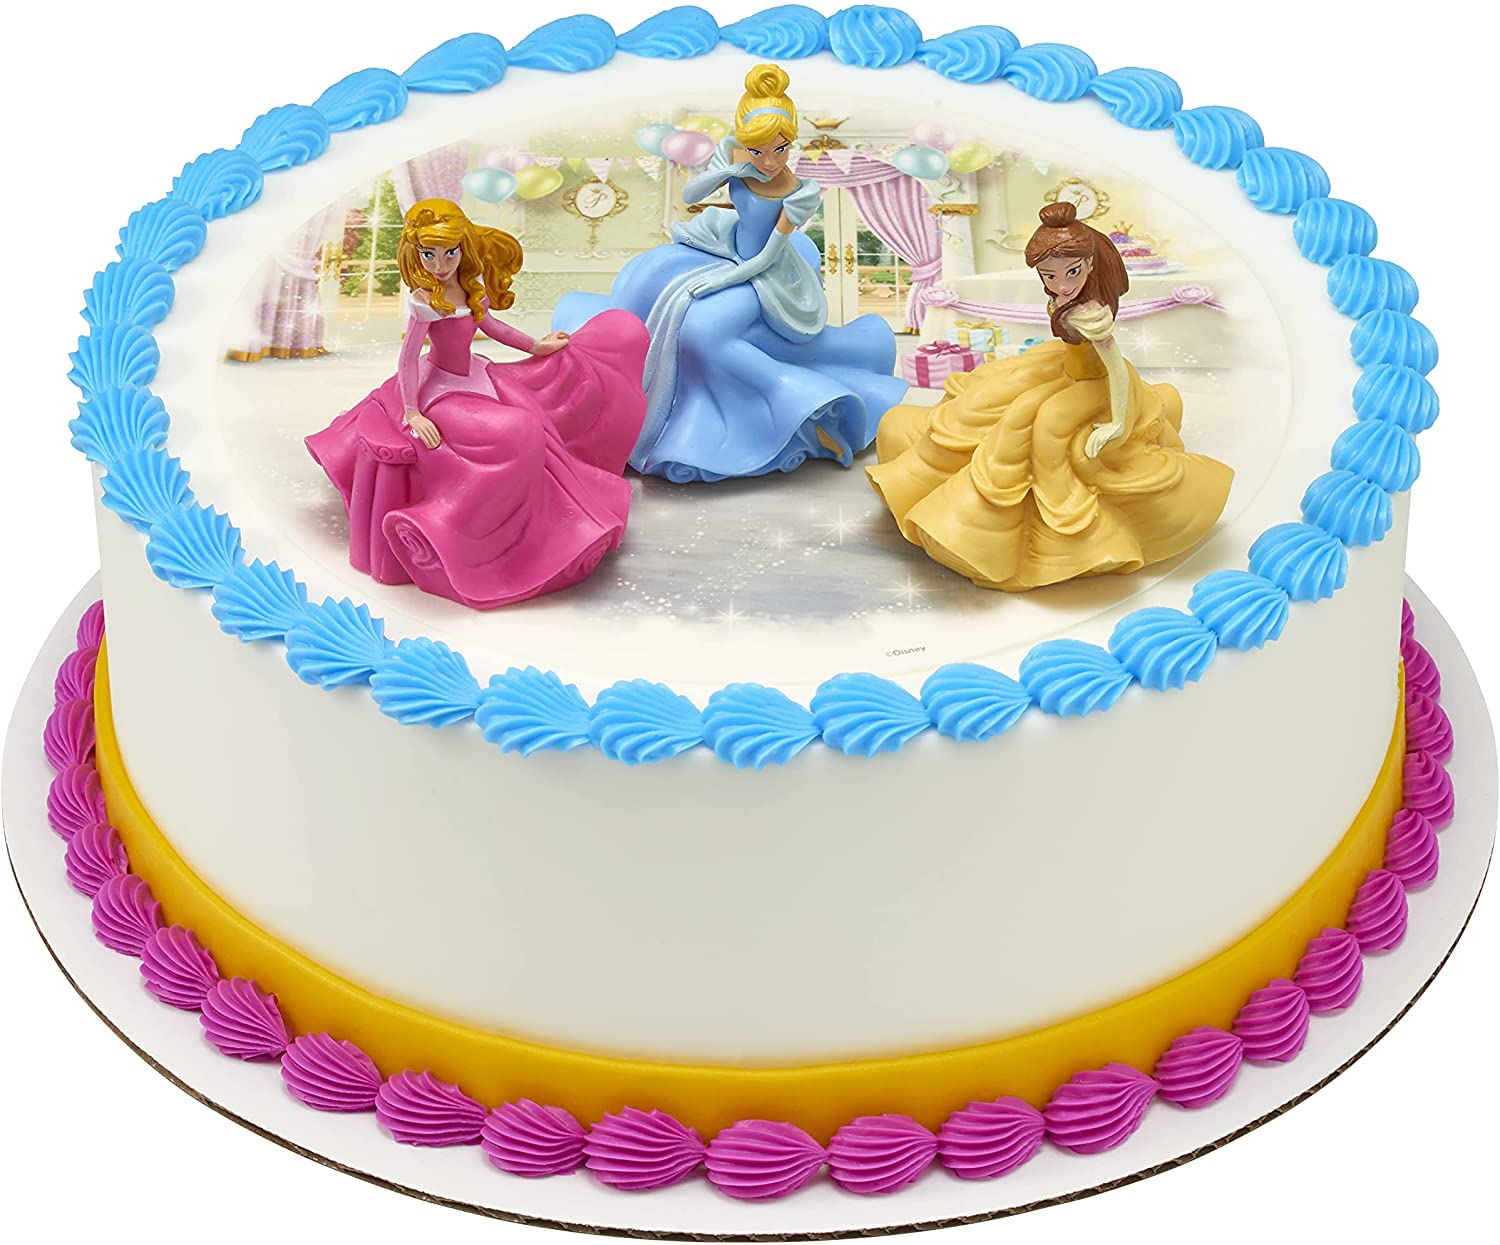 👸🏻👸🏻Bolo lindo de princesas para uma - Especial Cakes Itu